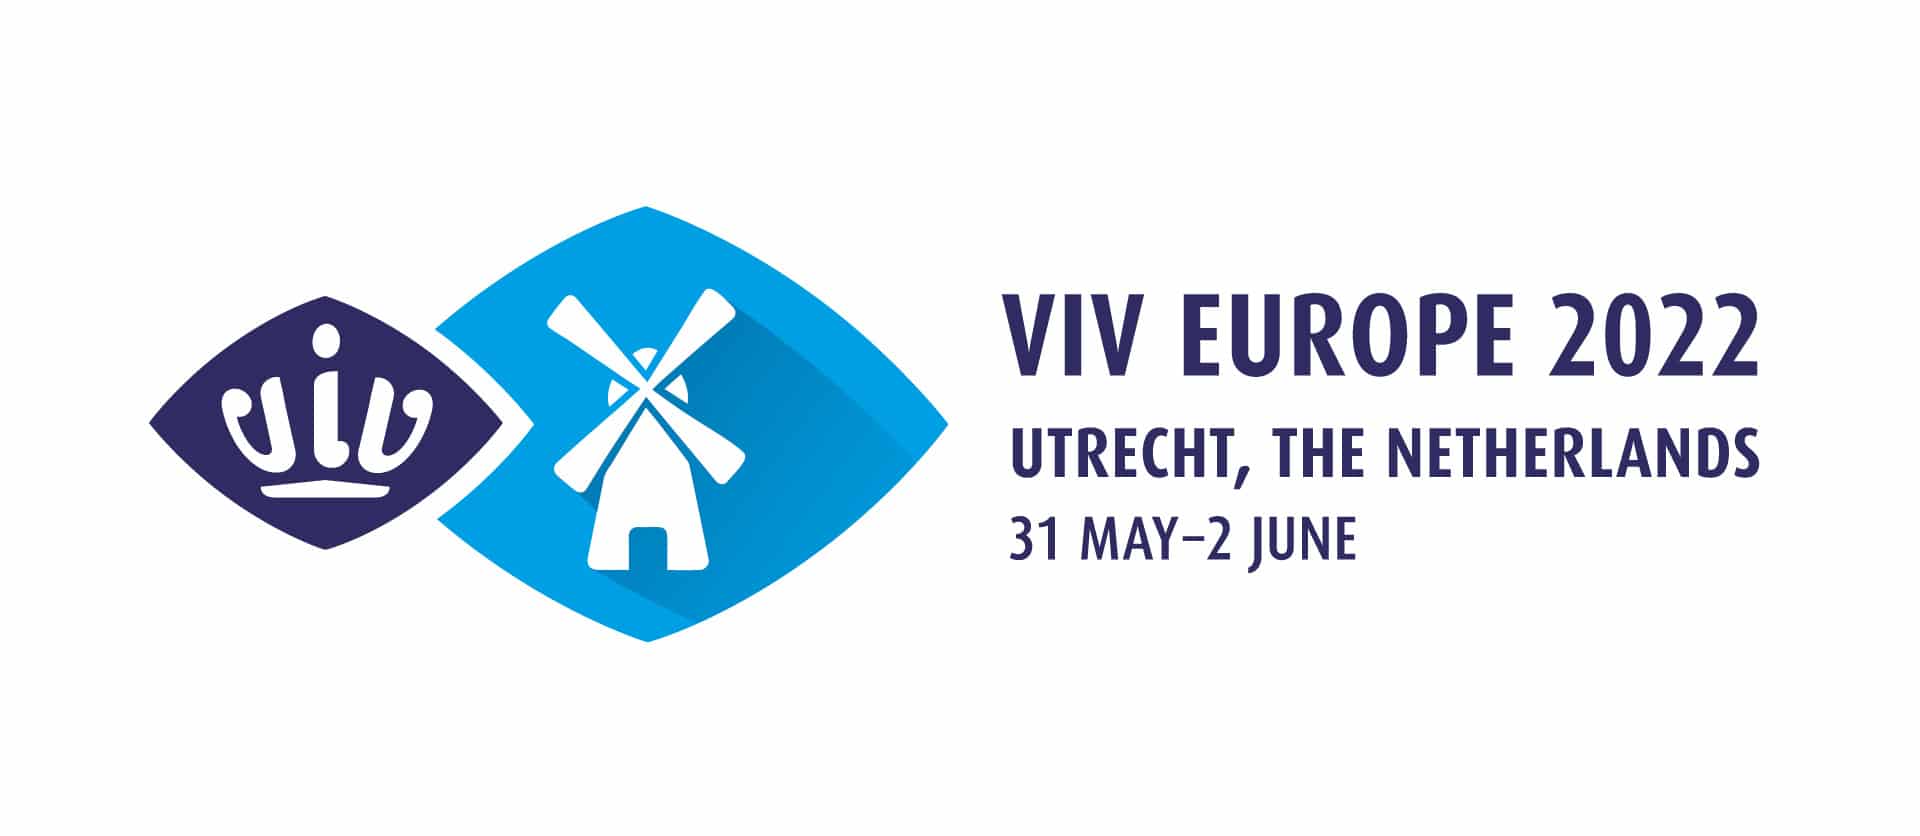 VIV EUROPE - Event - Ovotrack